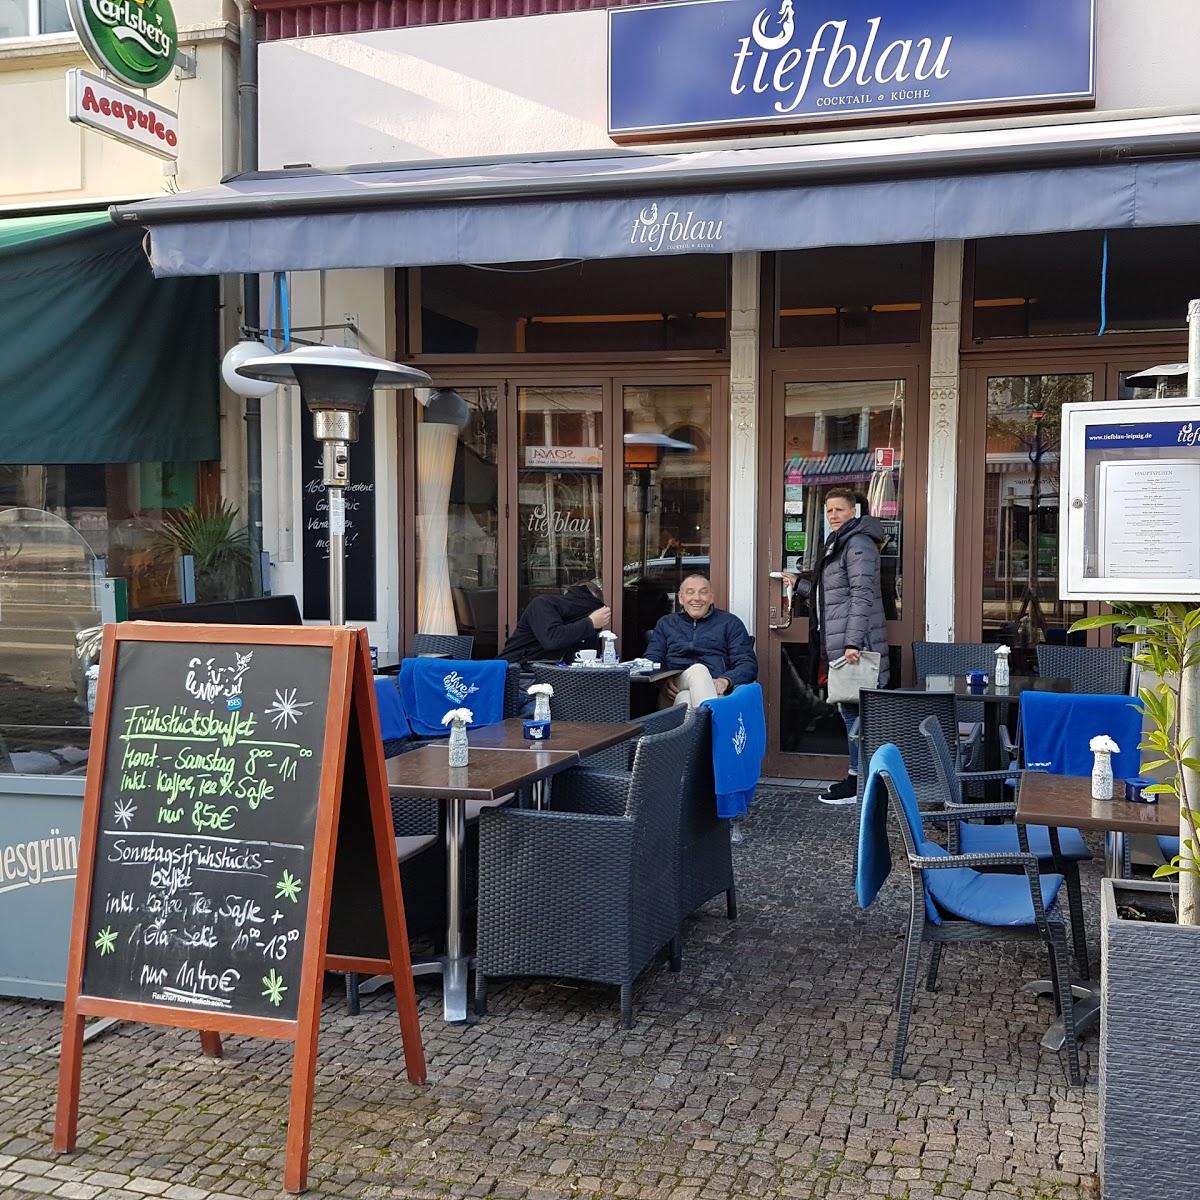 Restaurant "Tiefblau - Cocktail und Küche" in Leipzig